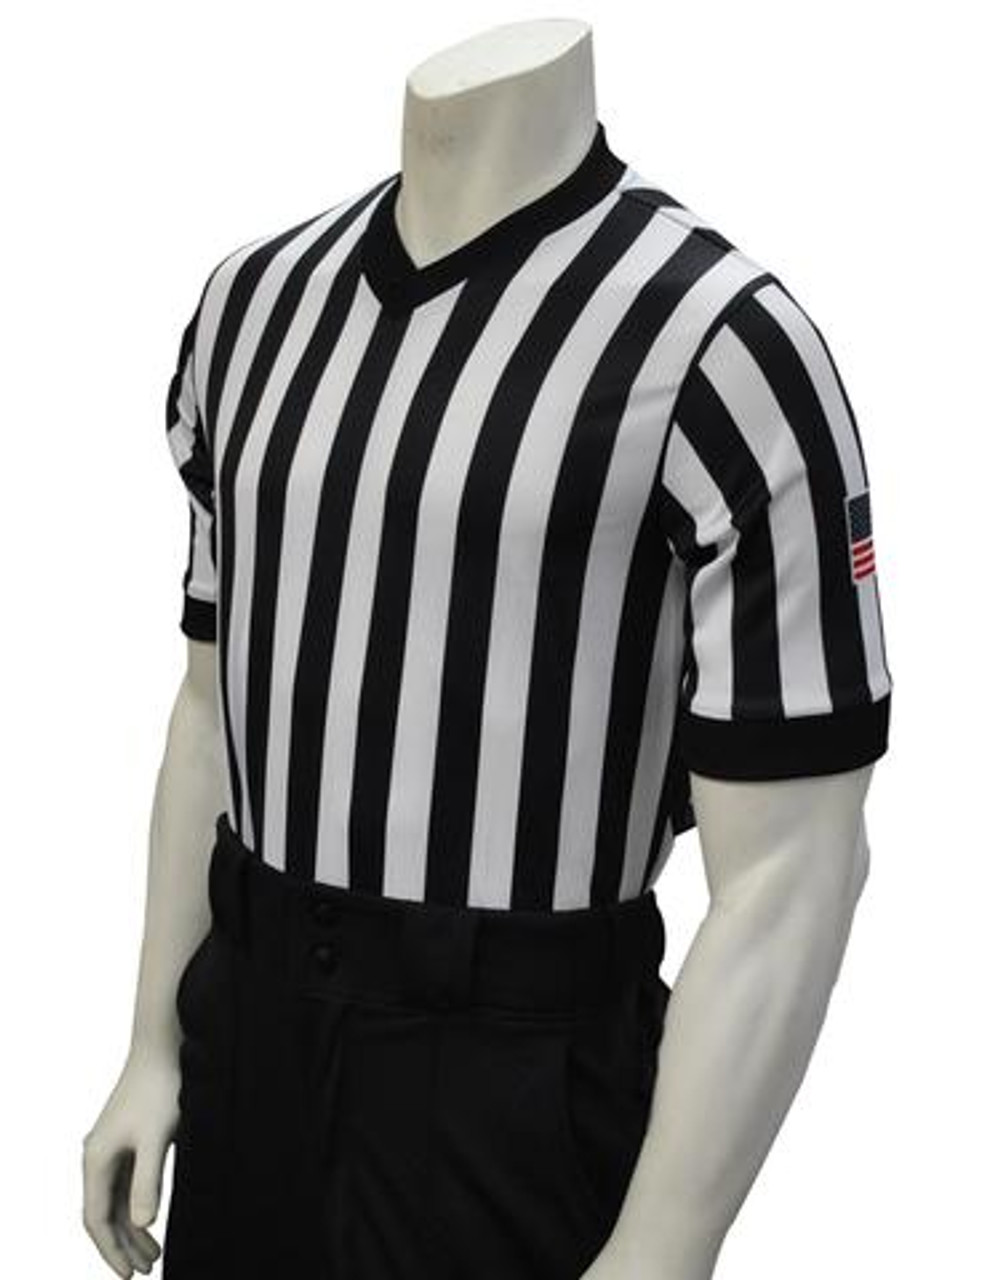 basketball referee jersey